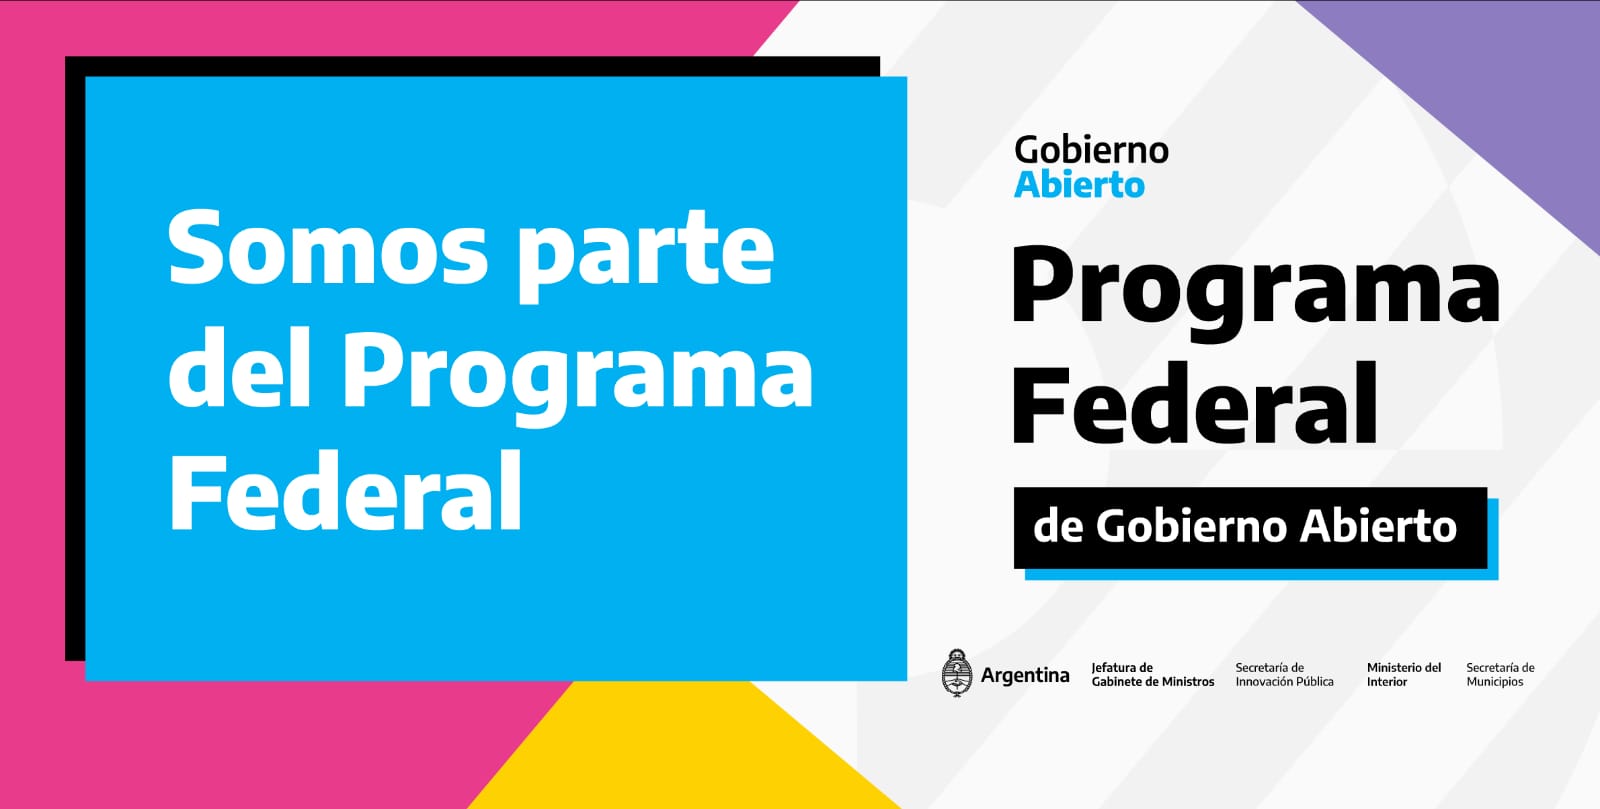 Programa-Federal-Gobierno-Abierto-2